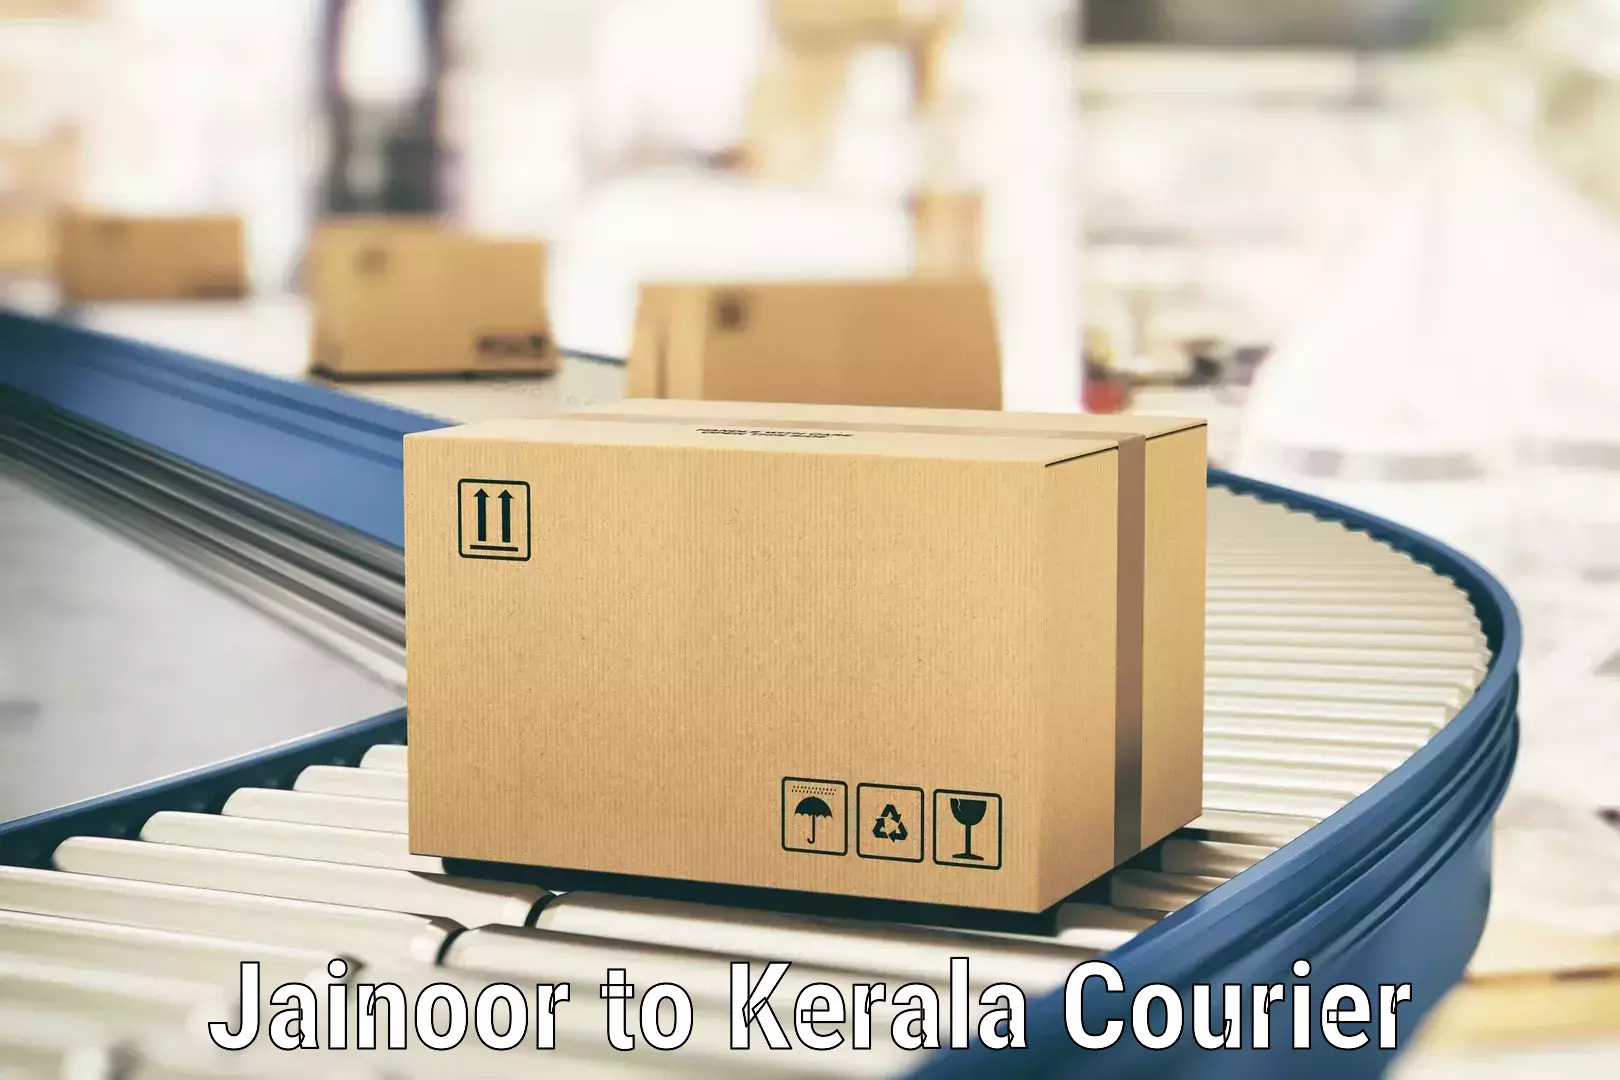 Cost-effective freight solutions Jainoor to Kalluvathukkal